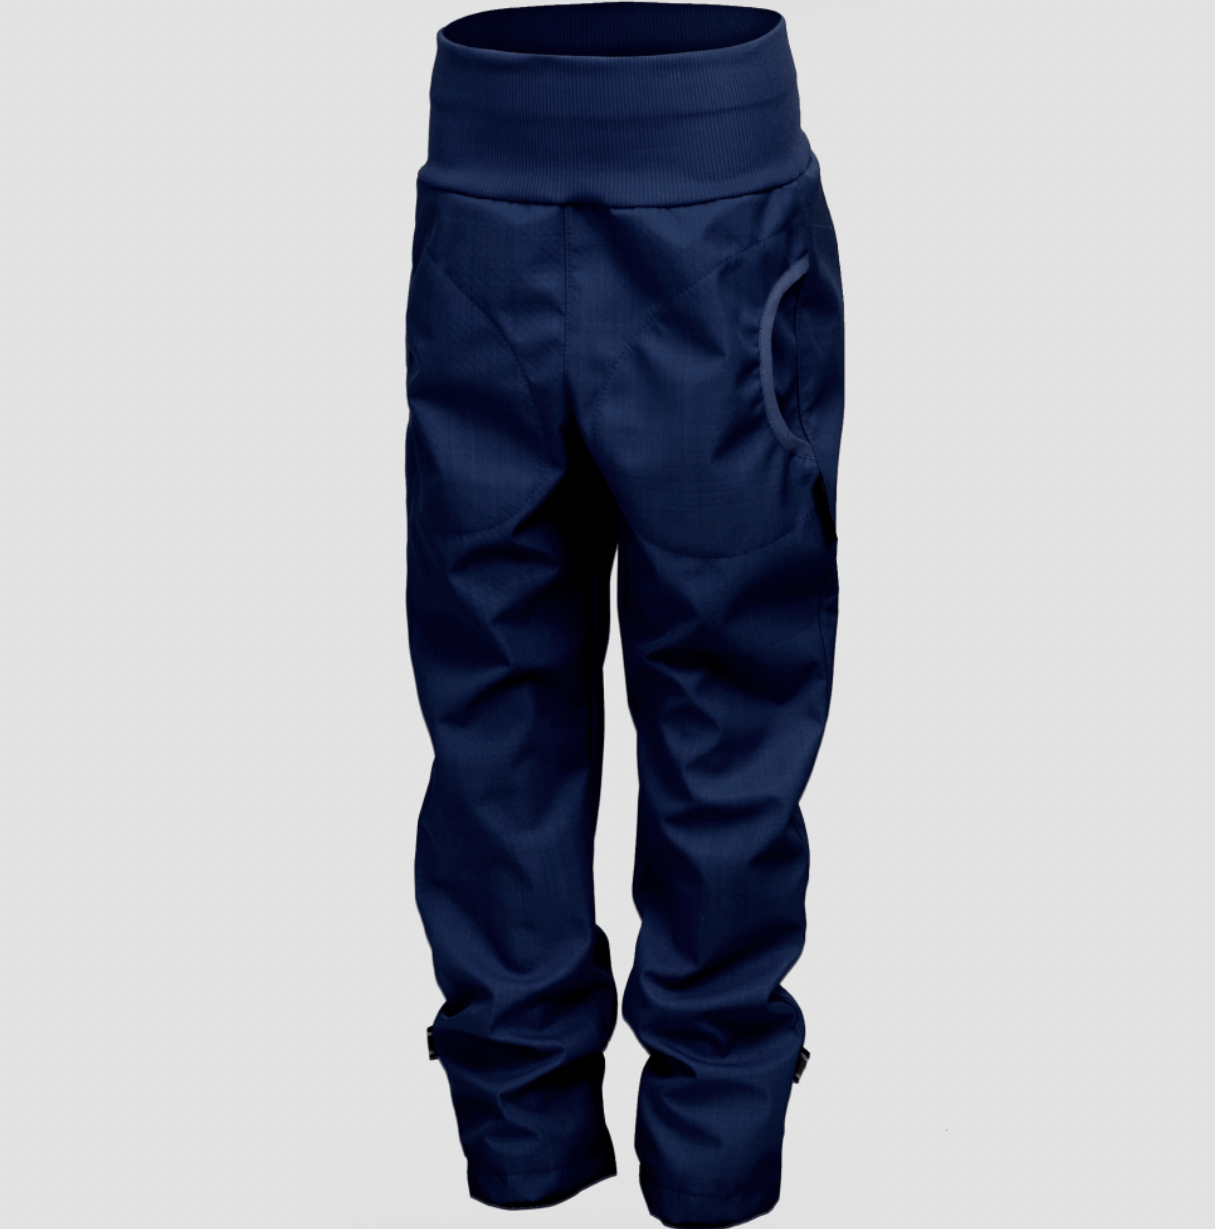 Softshellové kalhoty bambus/kapsy Jeans new vel. 110-116